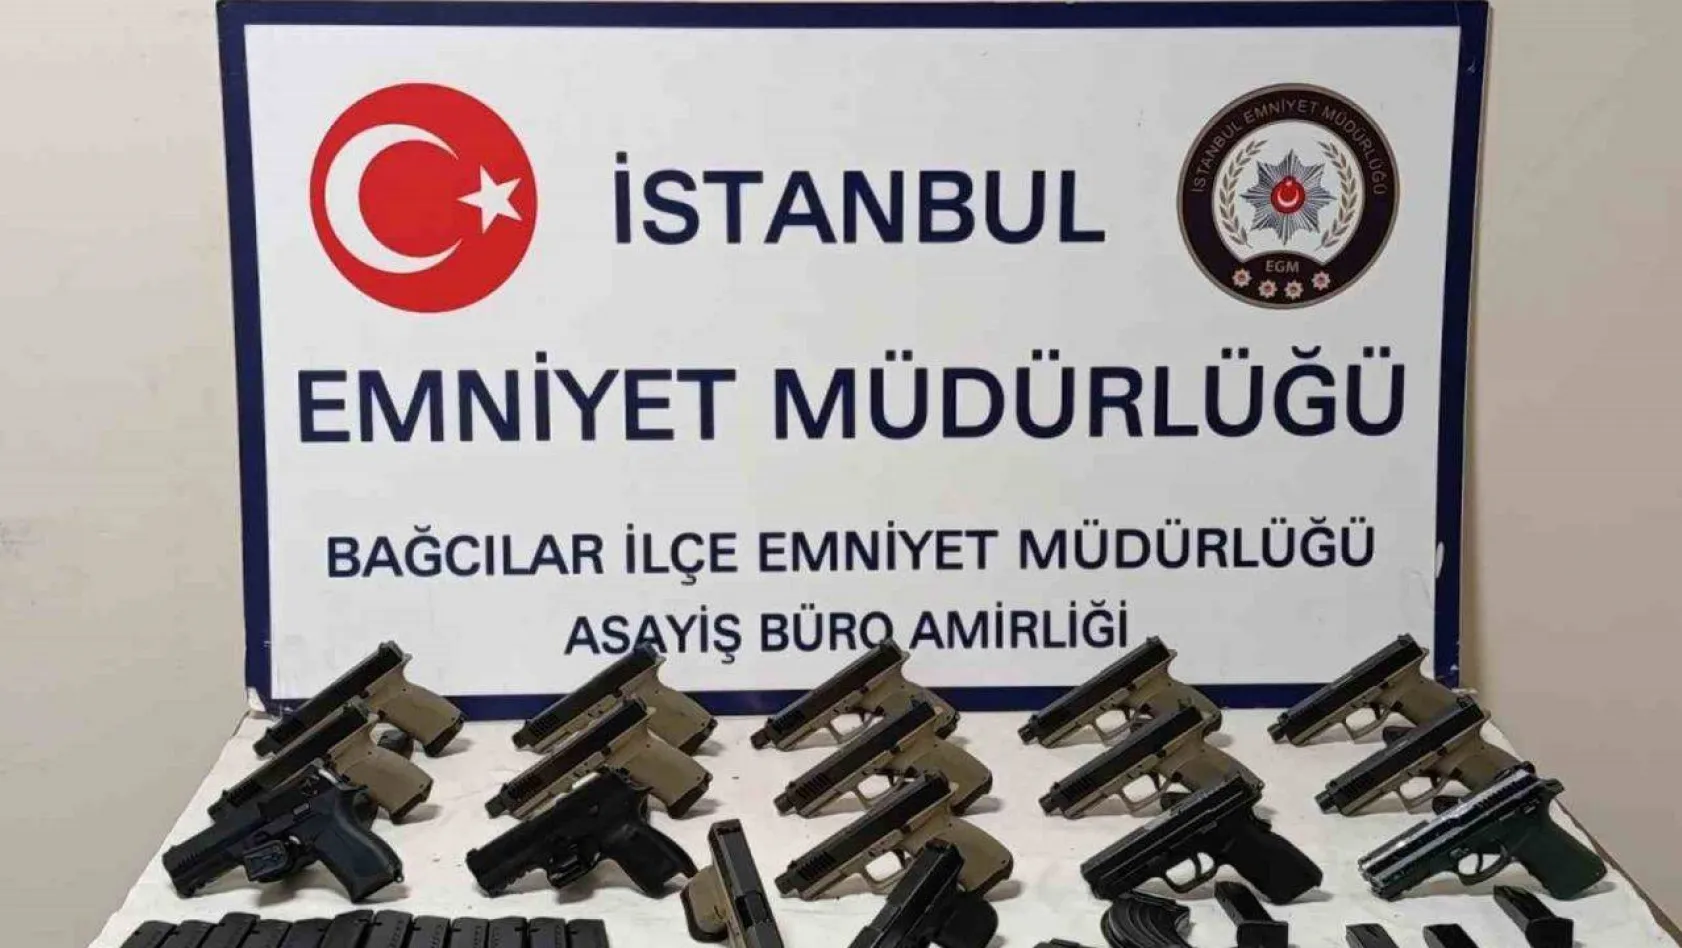 İstanbul'da yasa dışı silah ticareti operasyonu: 17 silah ele geçirildi